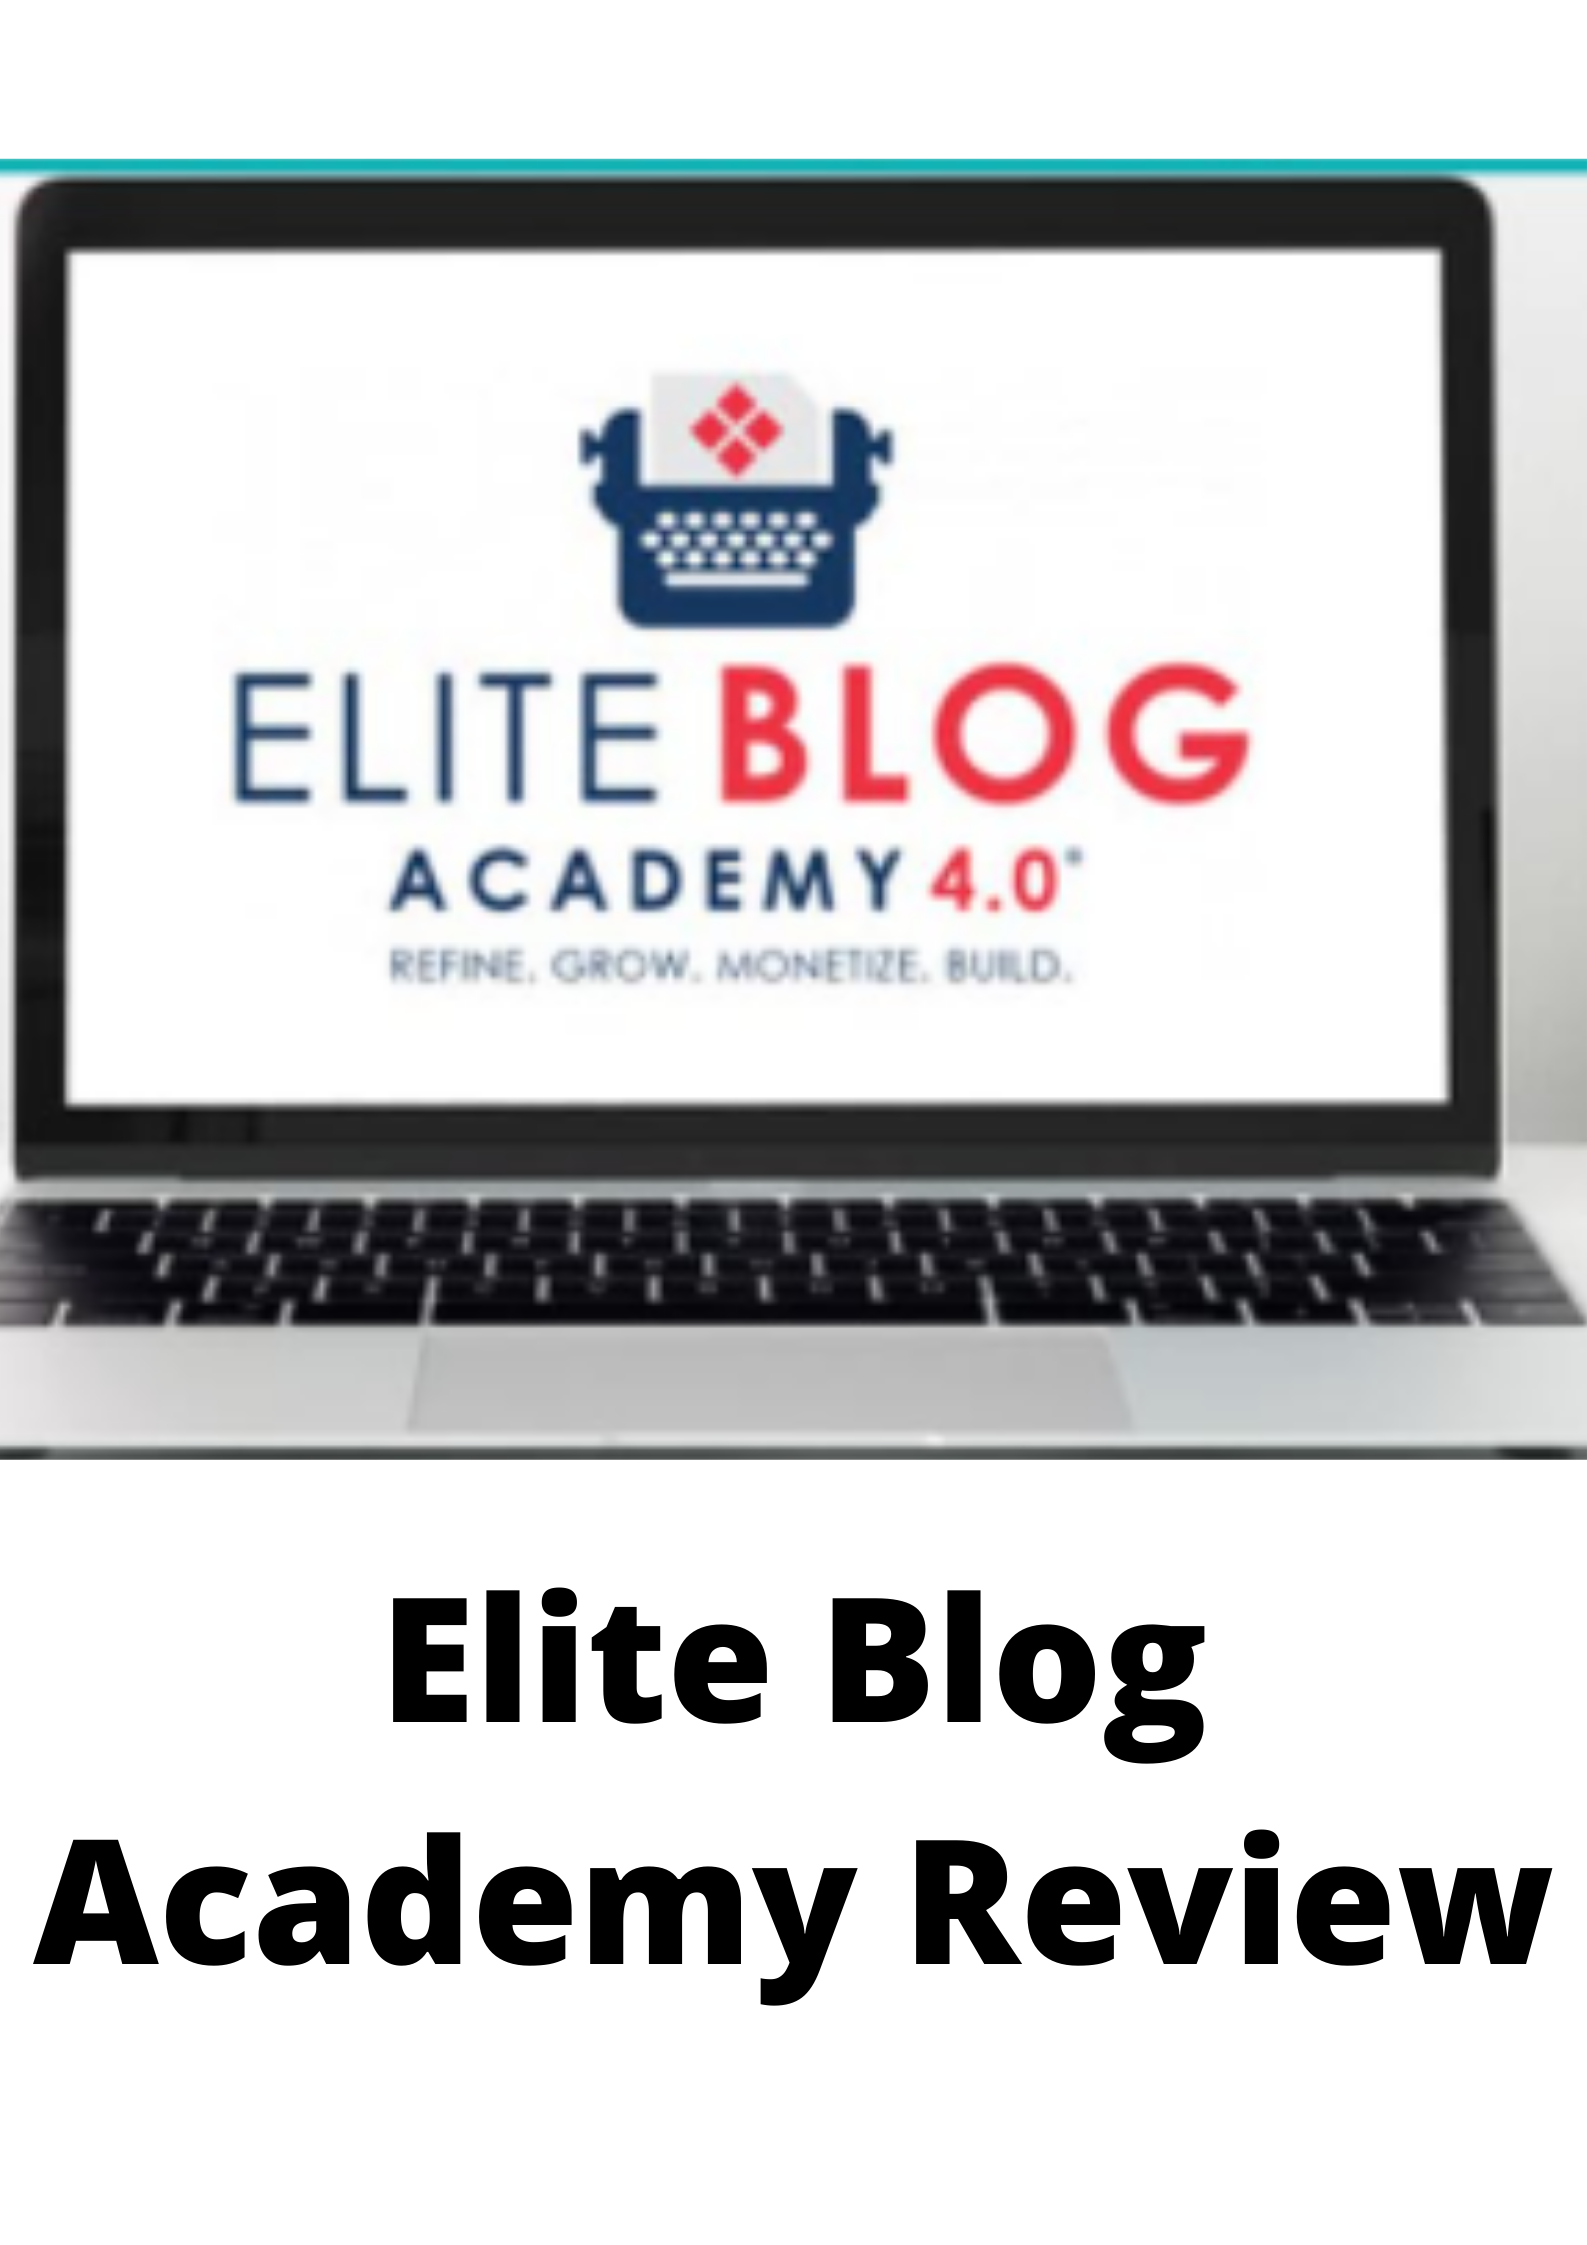 Elite Blog Academy Reviews